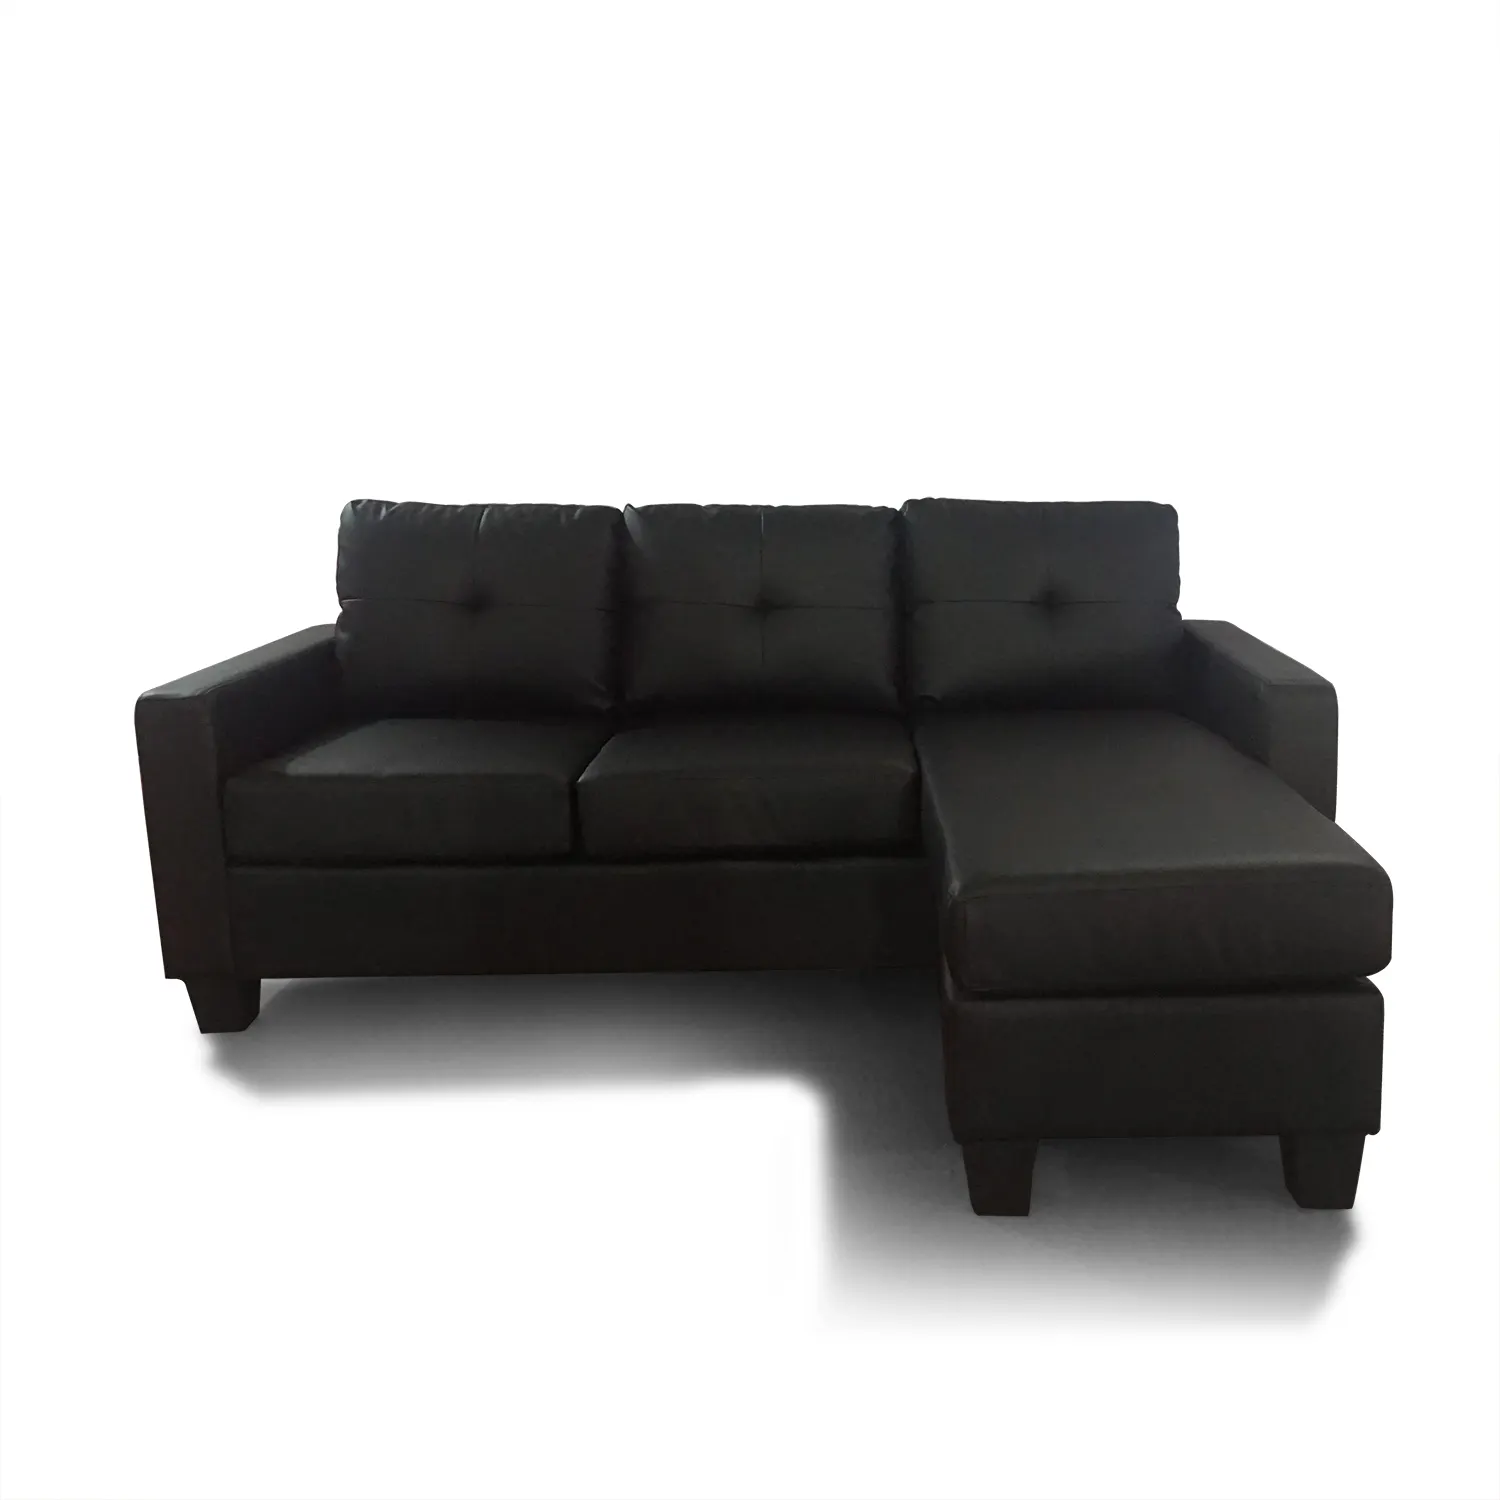 Высокое качество, под заказ, новейший дизайн, Королевский диван chesterfield, шезлонг, кресло, диван L-образной формы, секционный диван